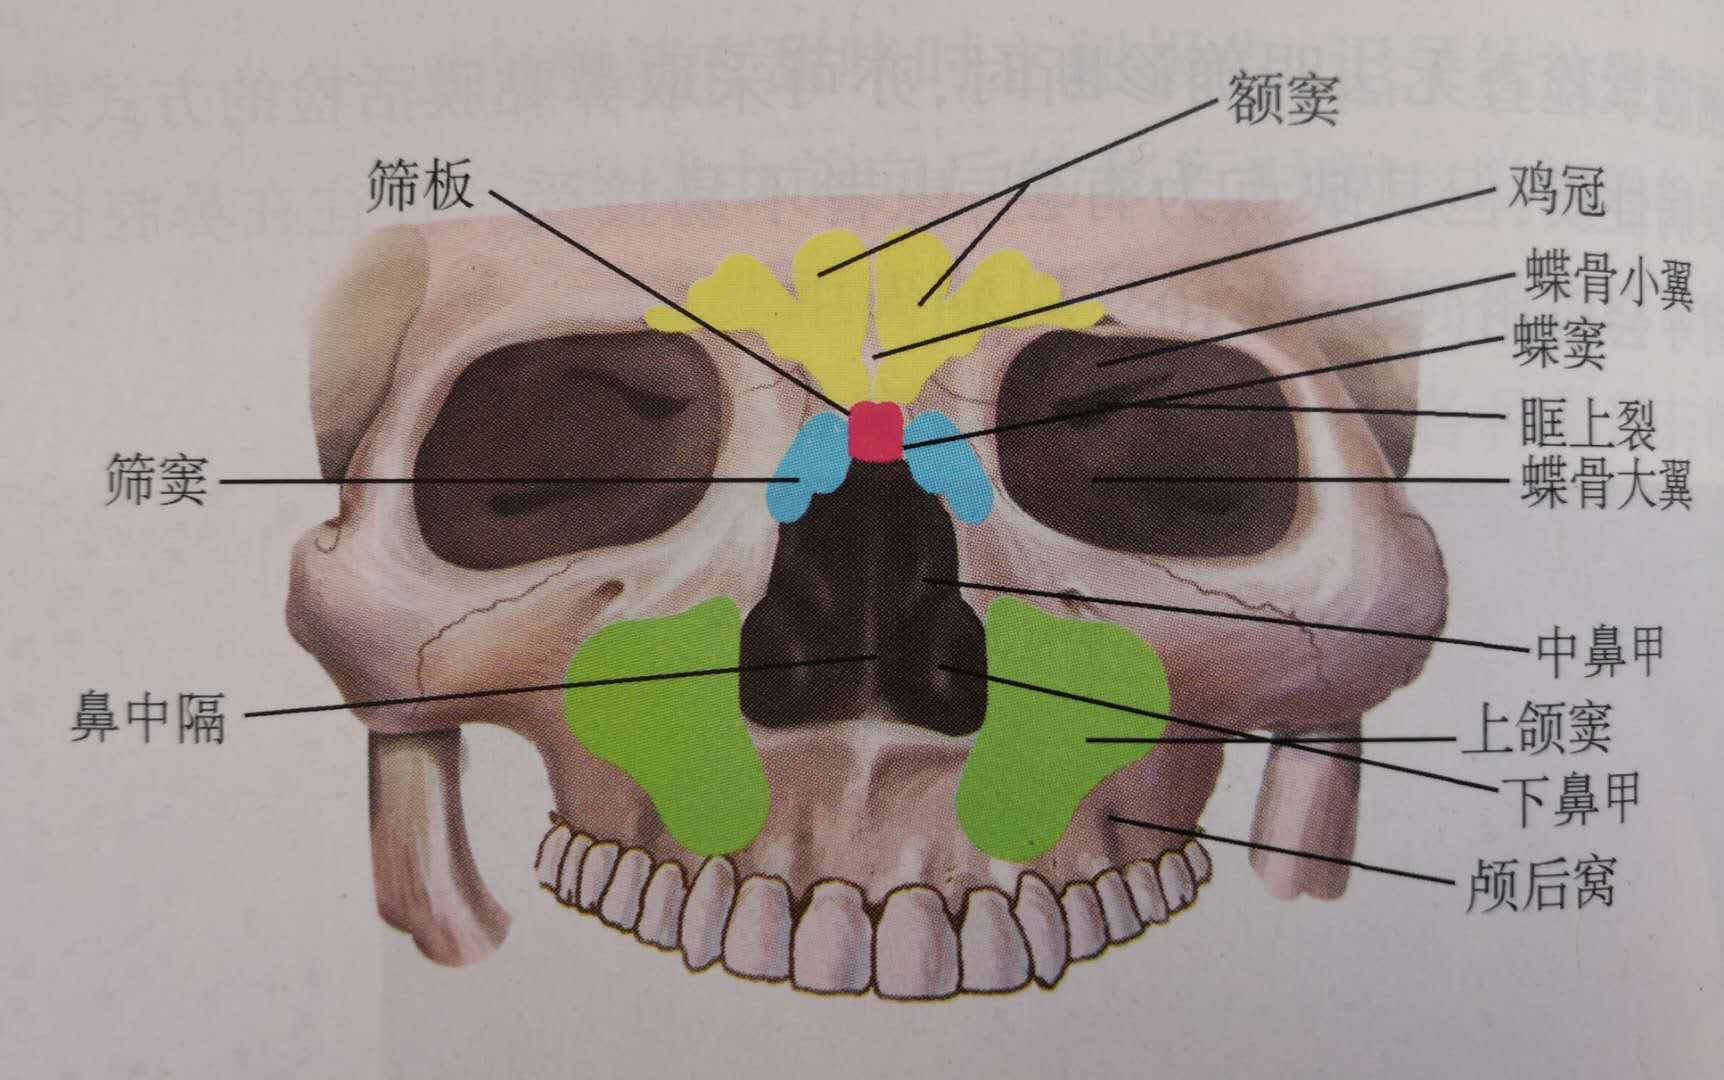 鼻窦区示意图图片